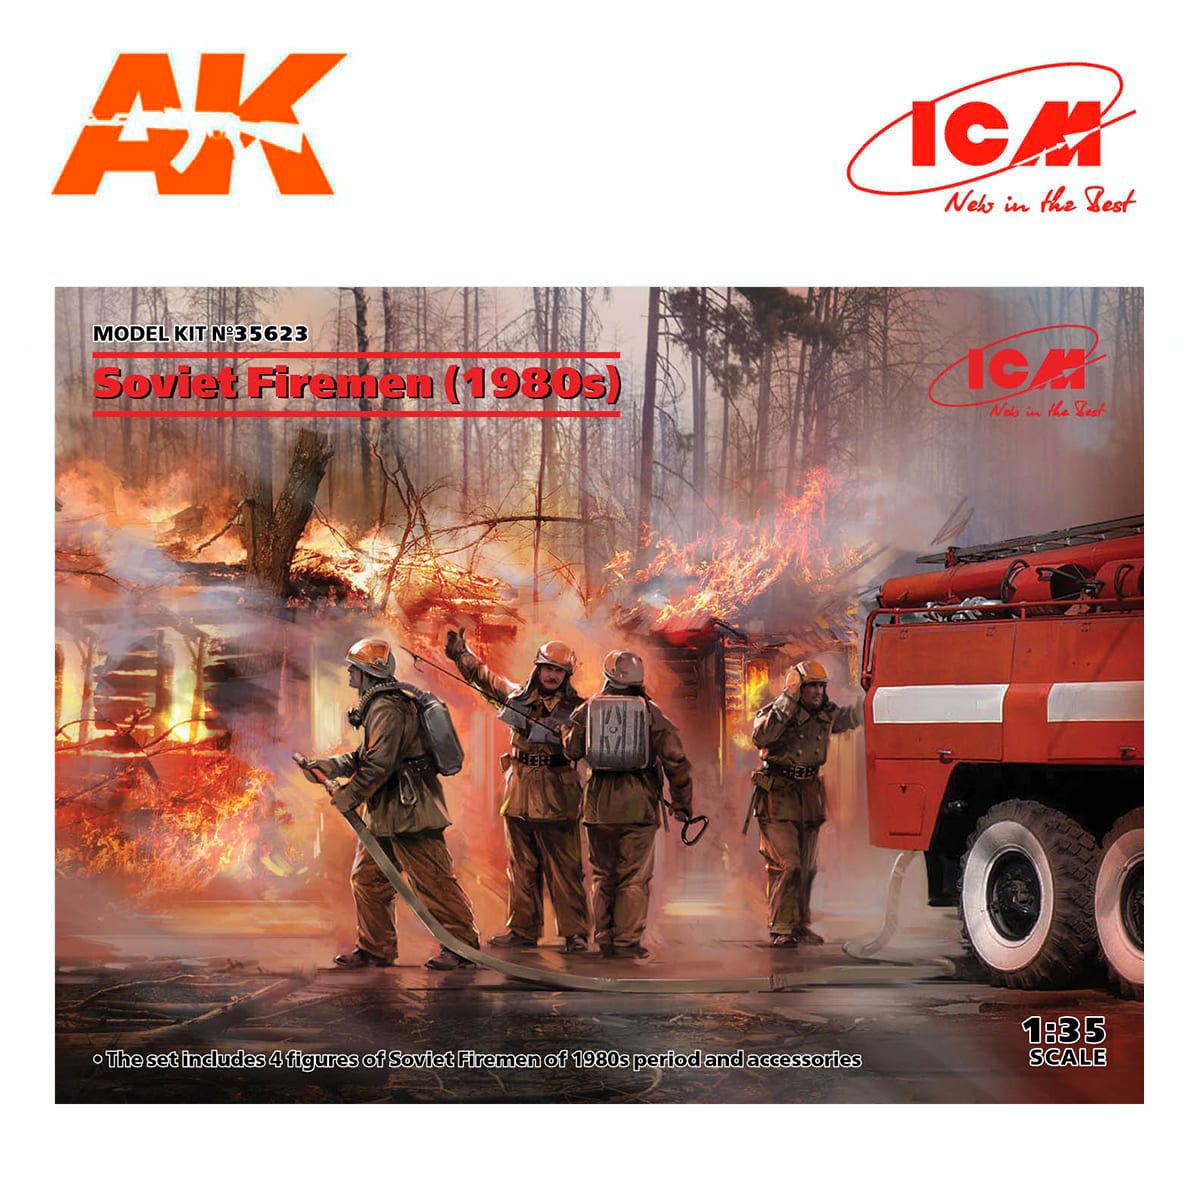 Soviet Firemen (1980s) 1/35